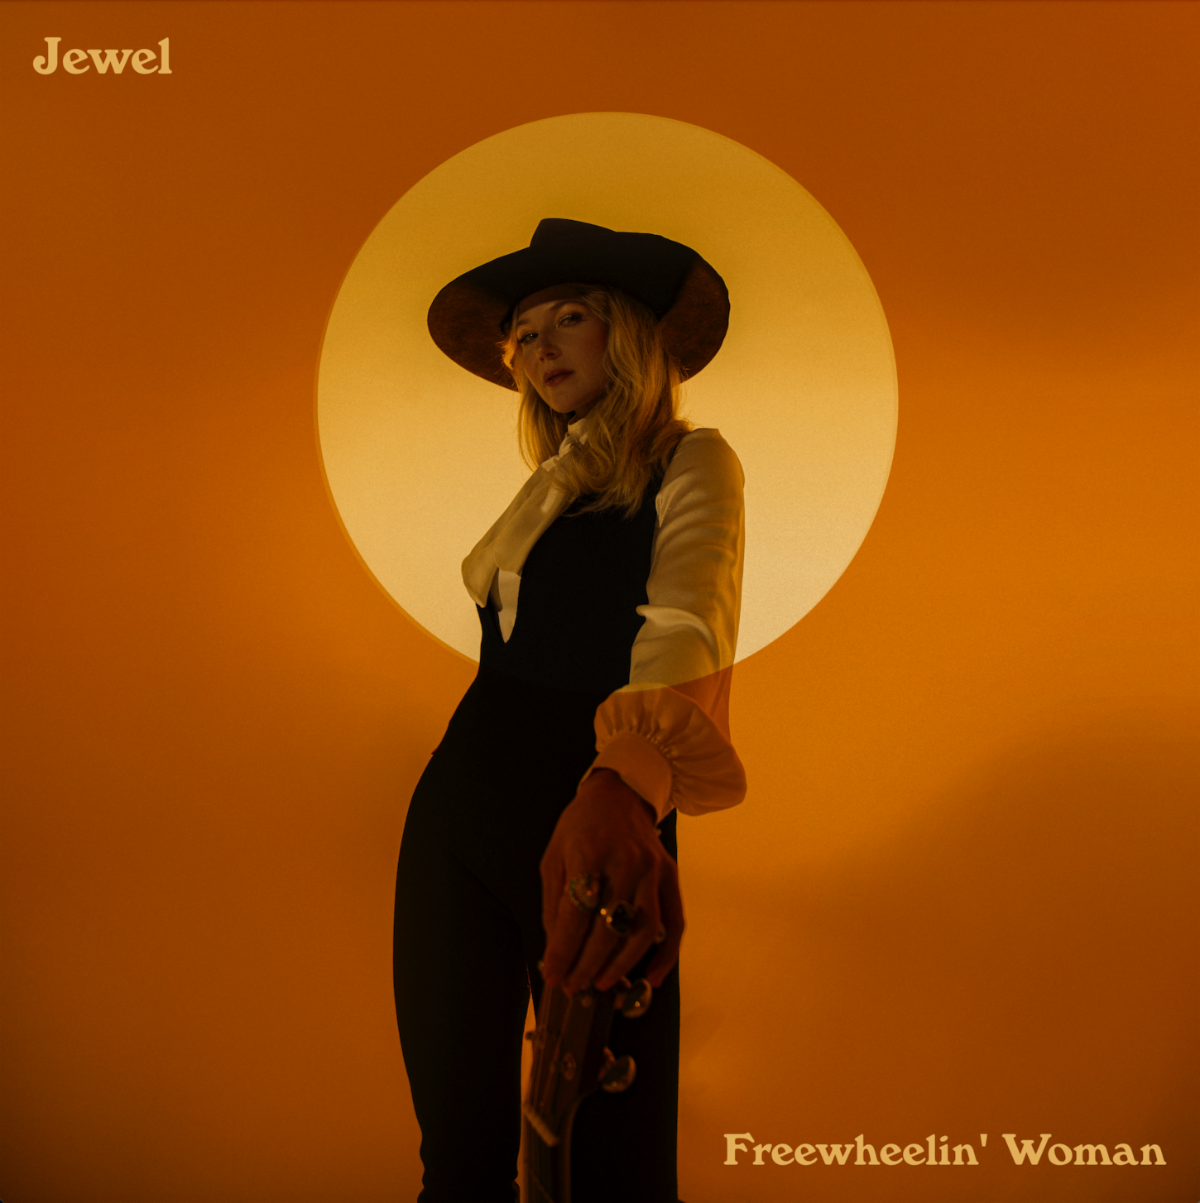 Jewel releases Freewheelin' Woman